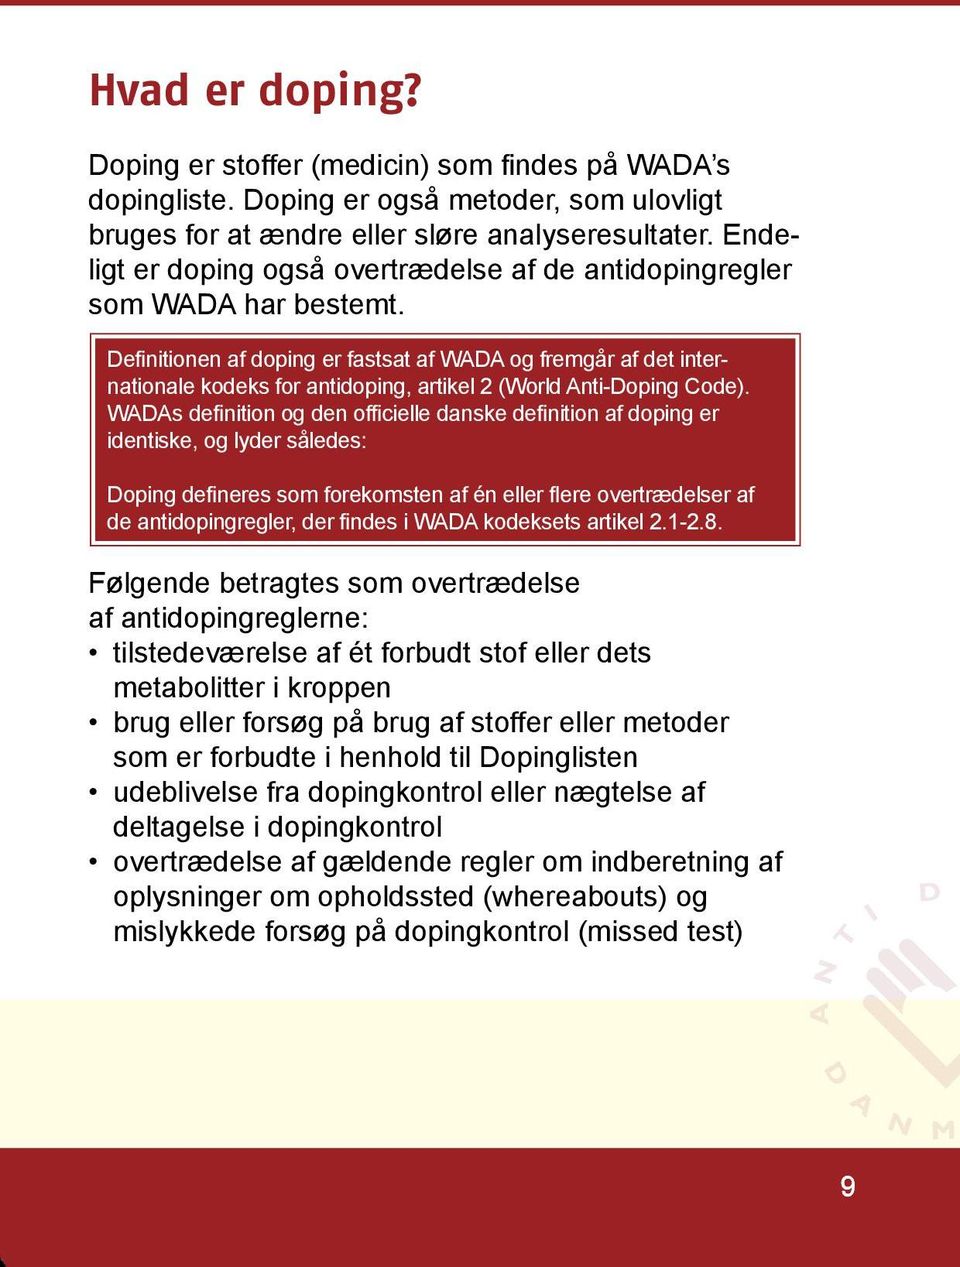 Definitionen af doping er fastsat af WADA og fremgår af det internationale kodeks for antidoping, artikel 2 (World Anti-Doping Code).